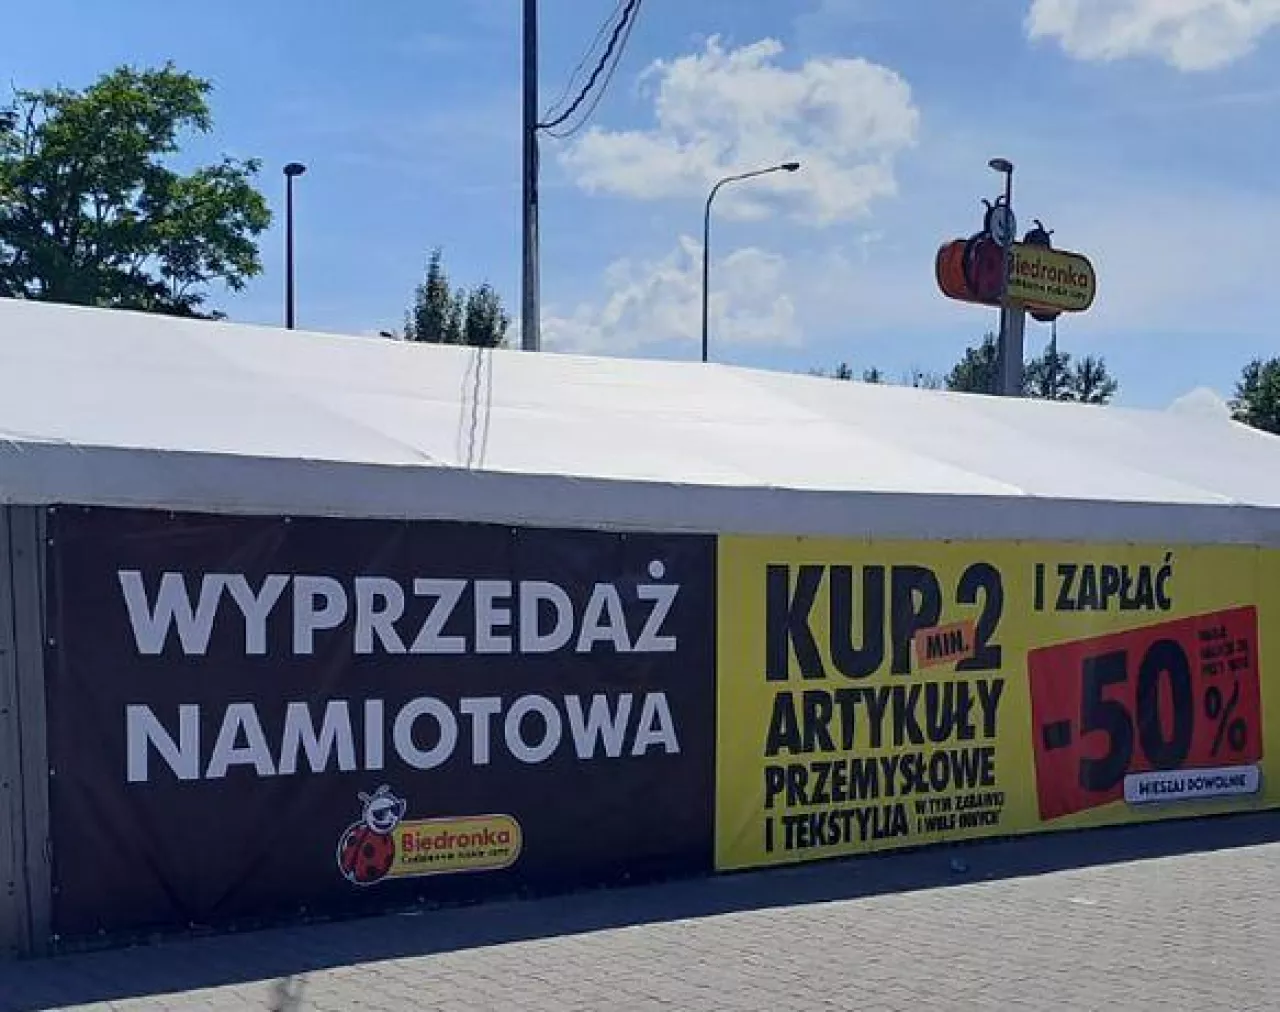 Namiot wyprzedażowy Biedronki (fot. mat. pras.)